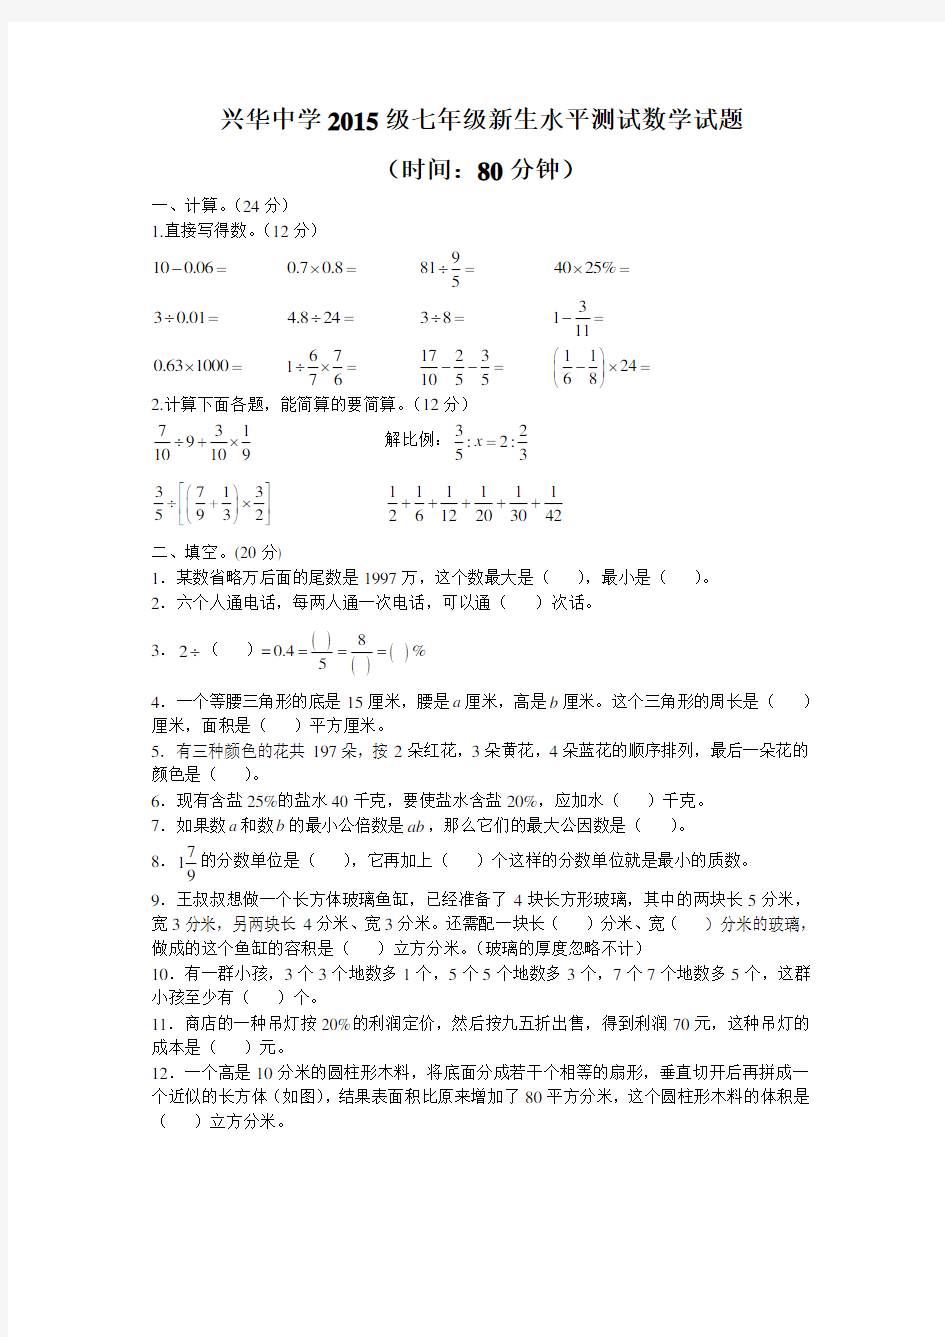 兴华中学2015级分班考试数学试题